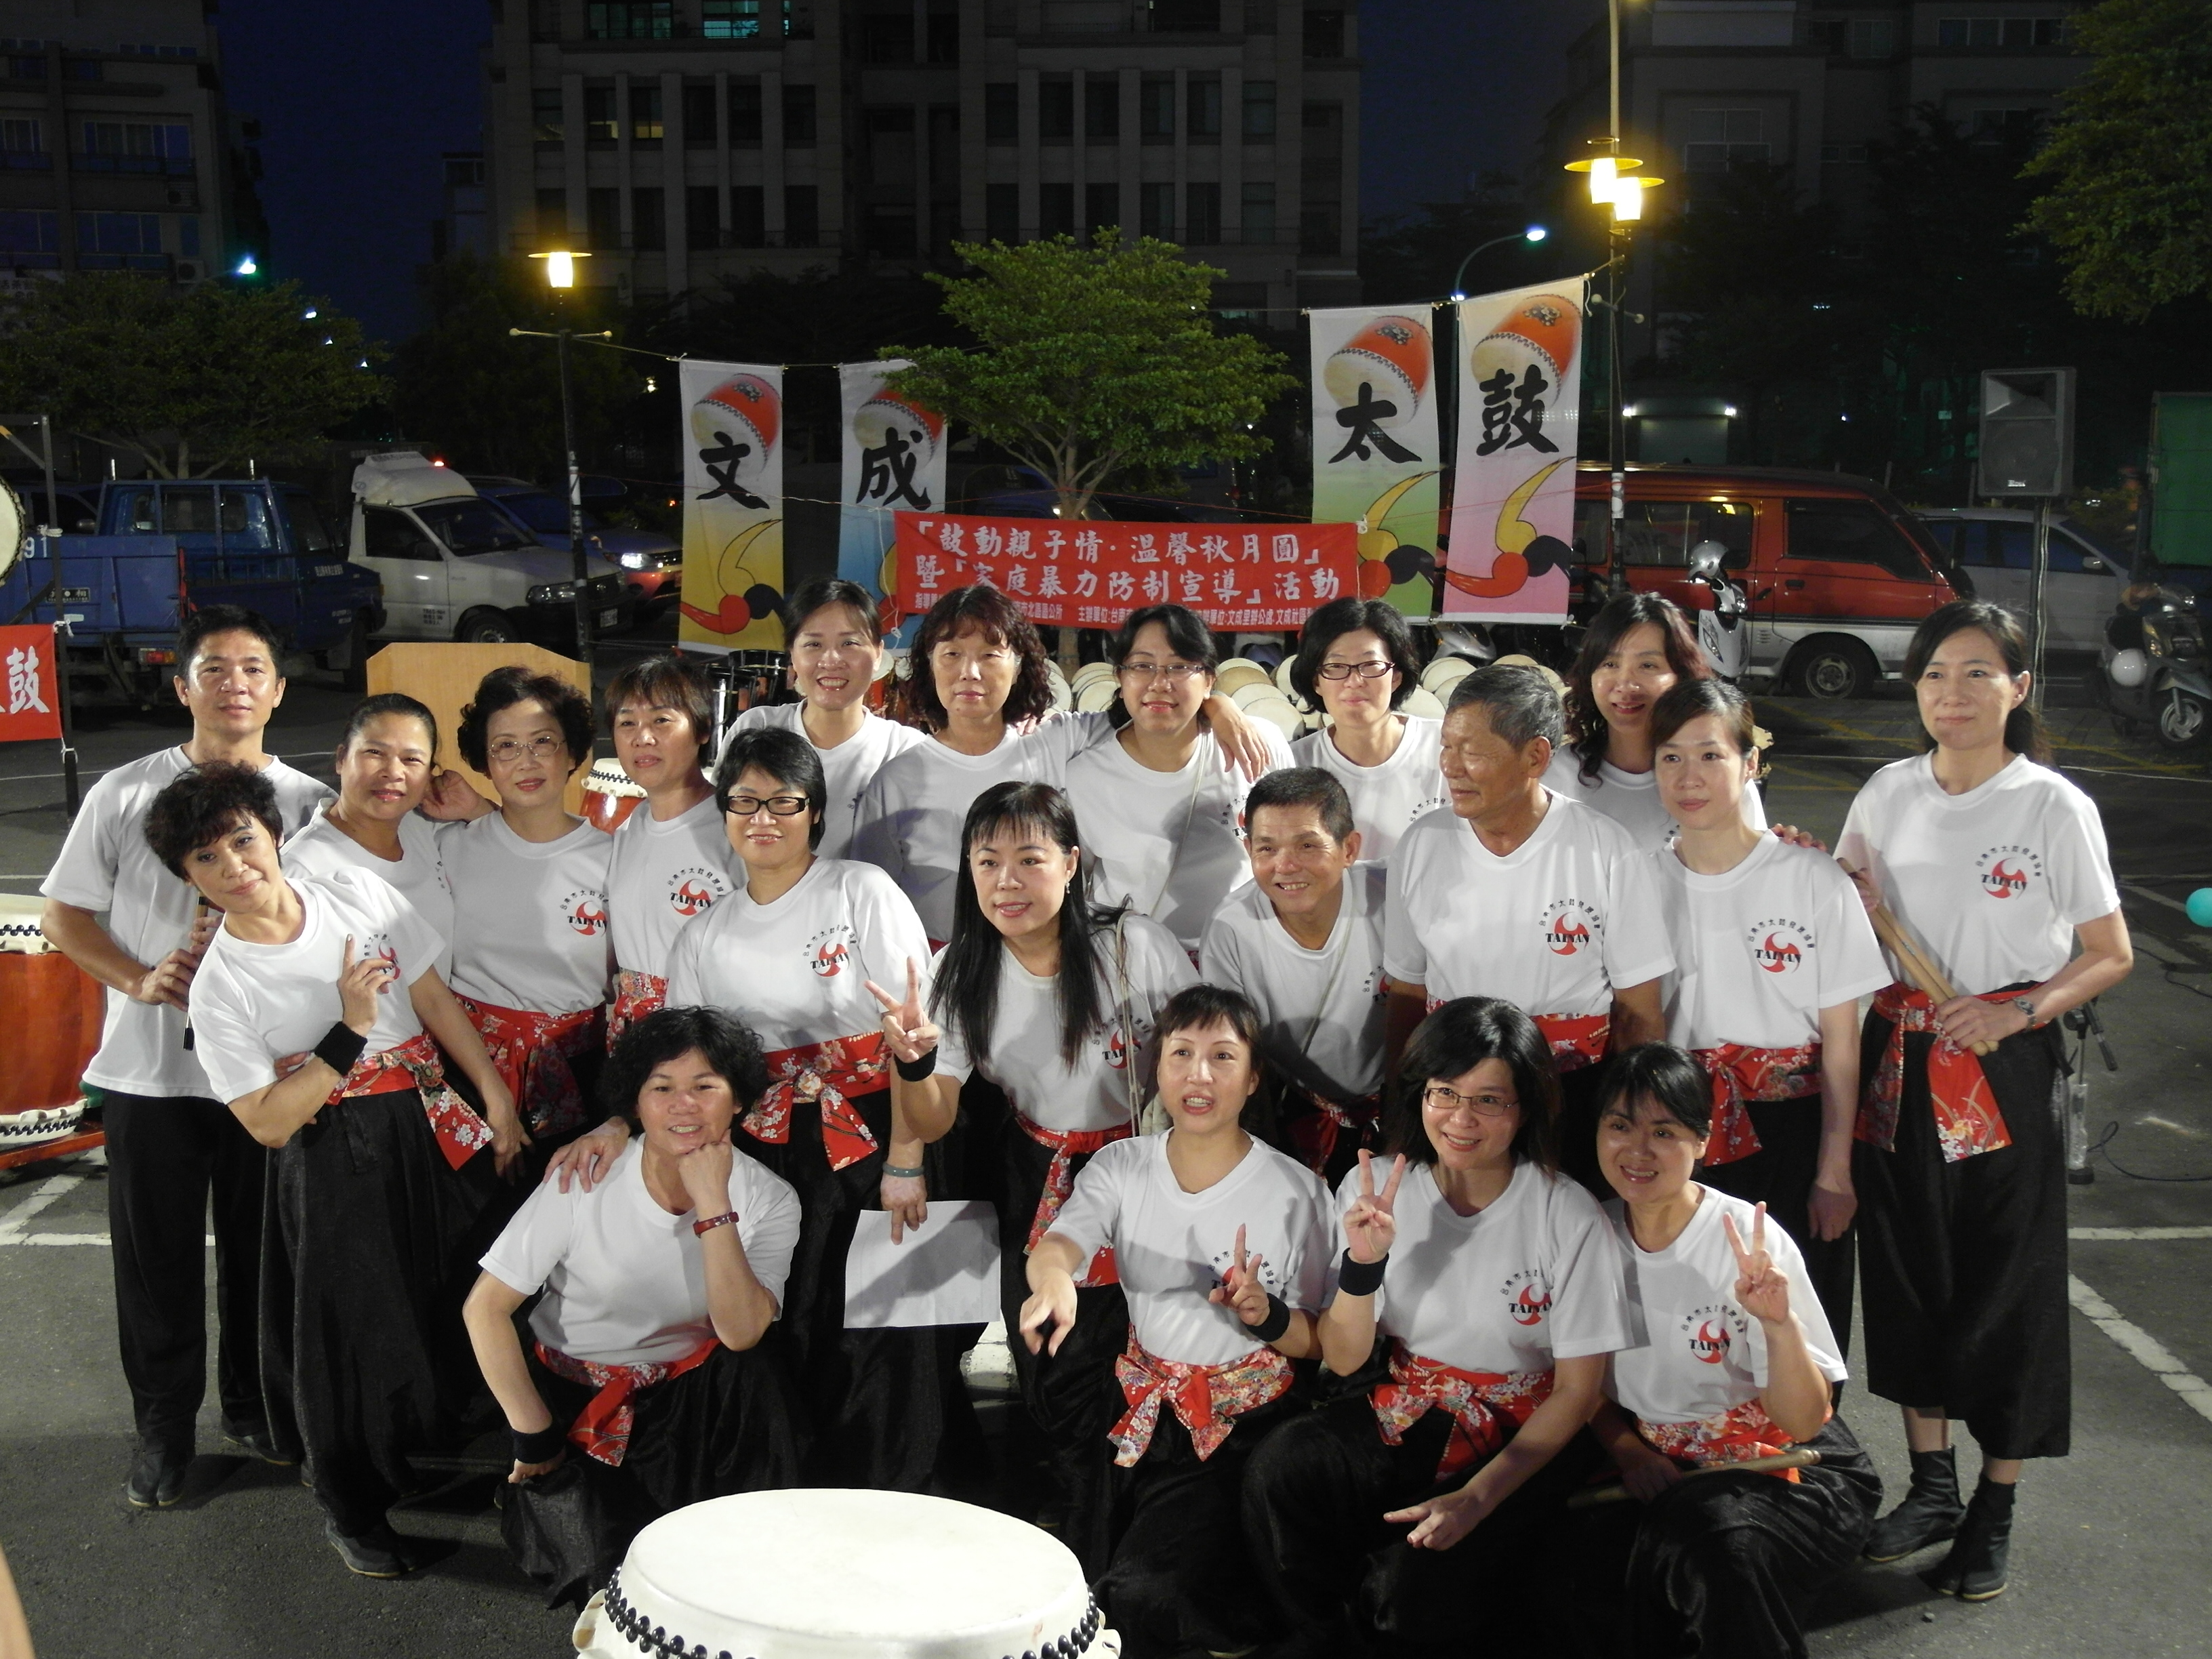 台南市太鼓發展協會代表圖像